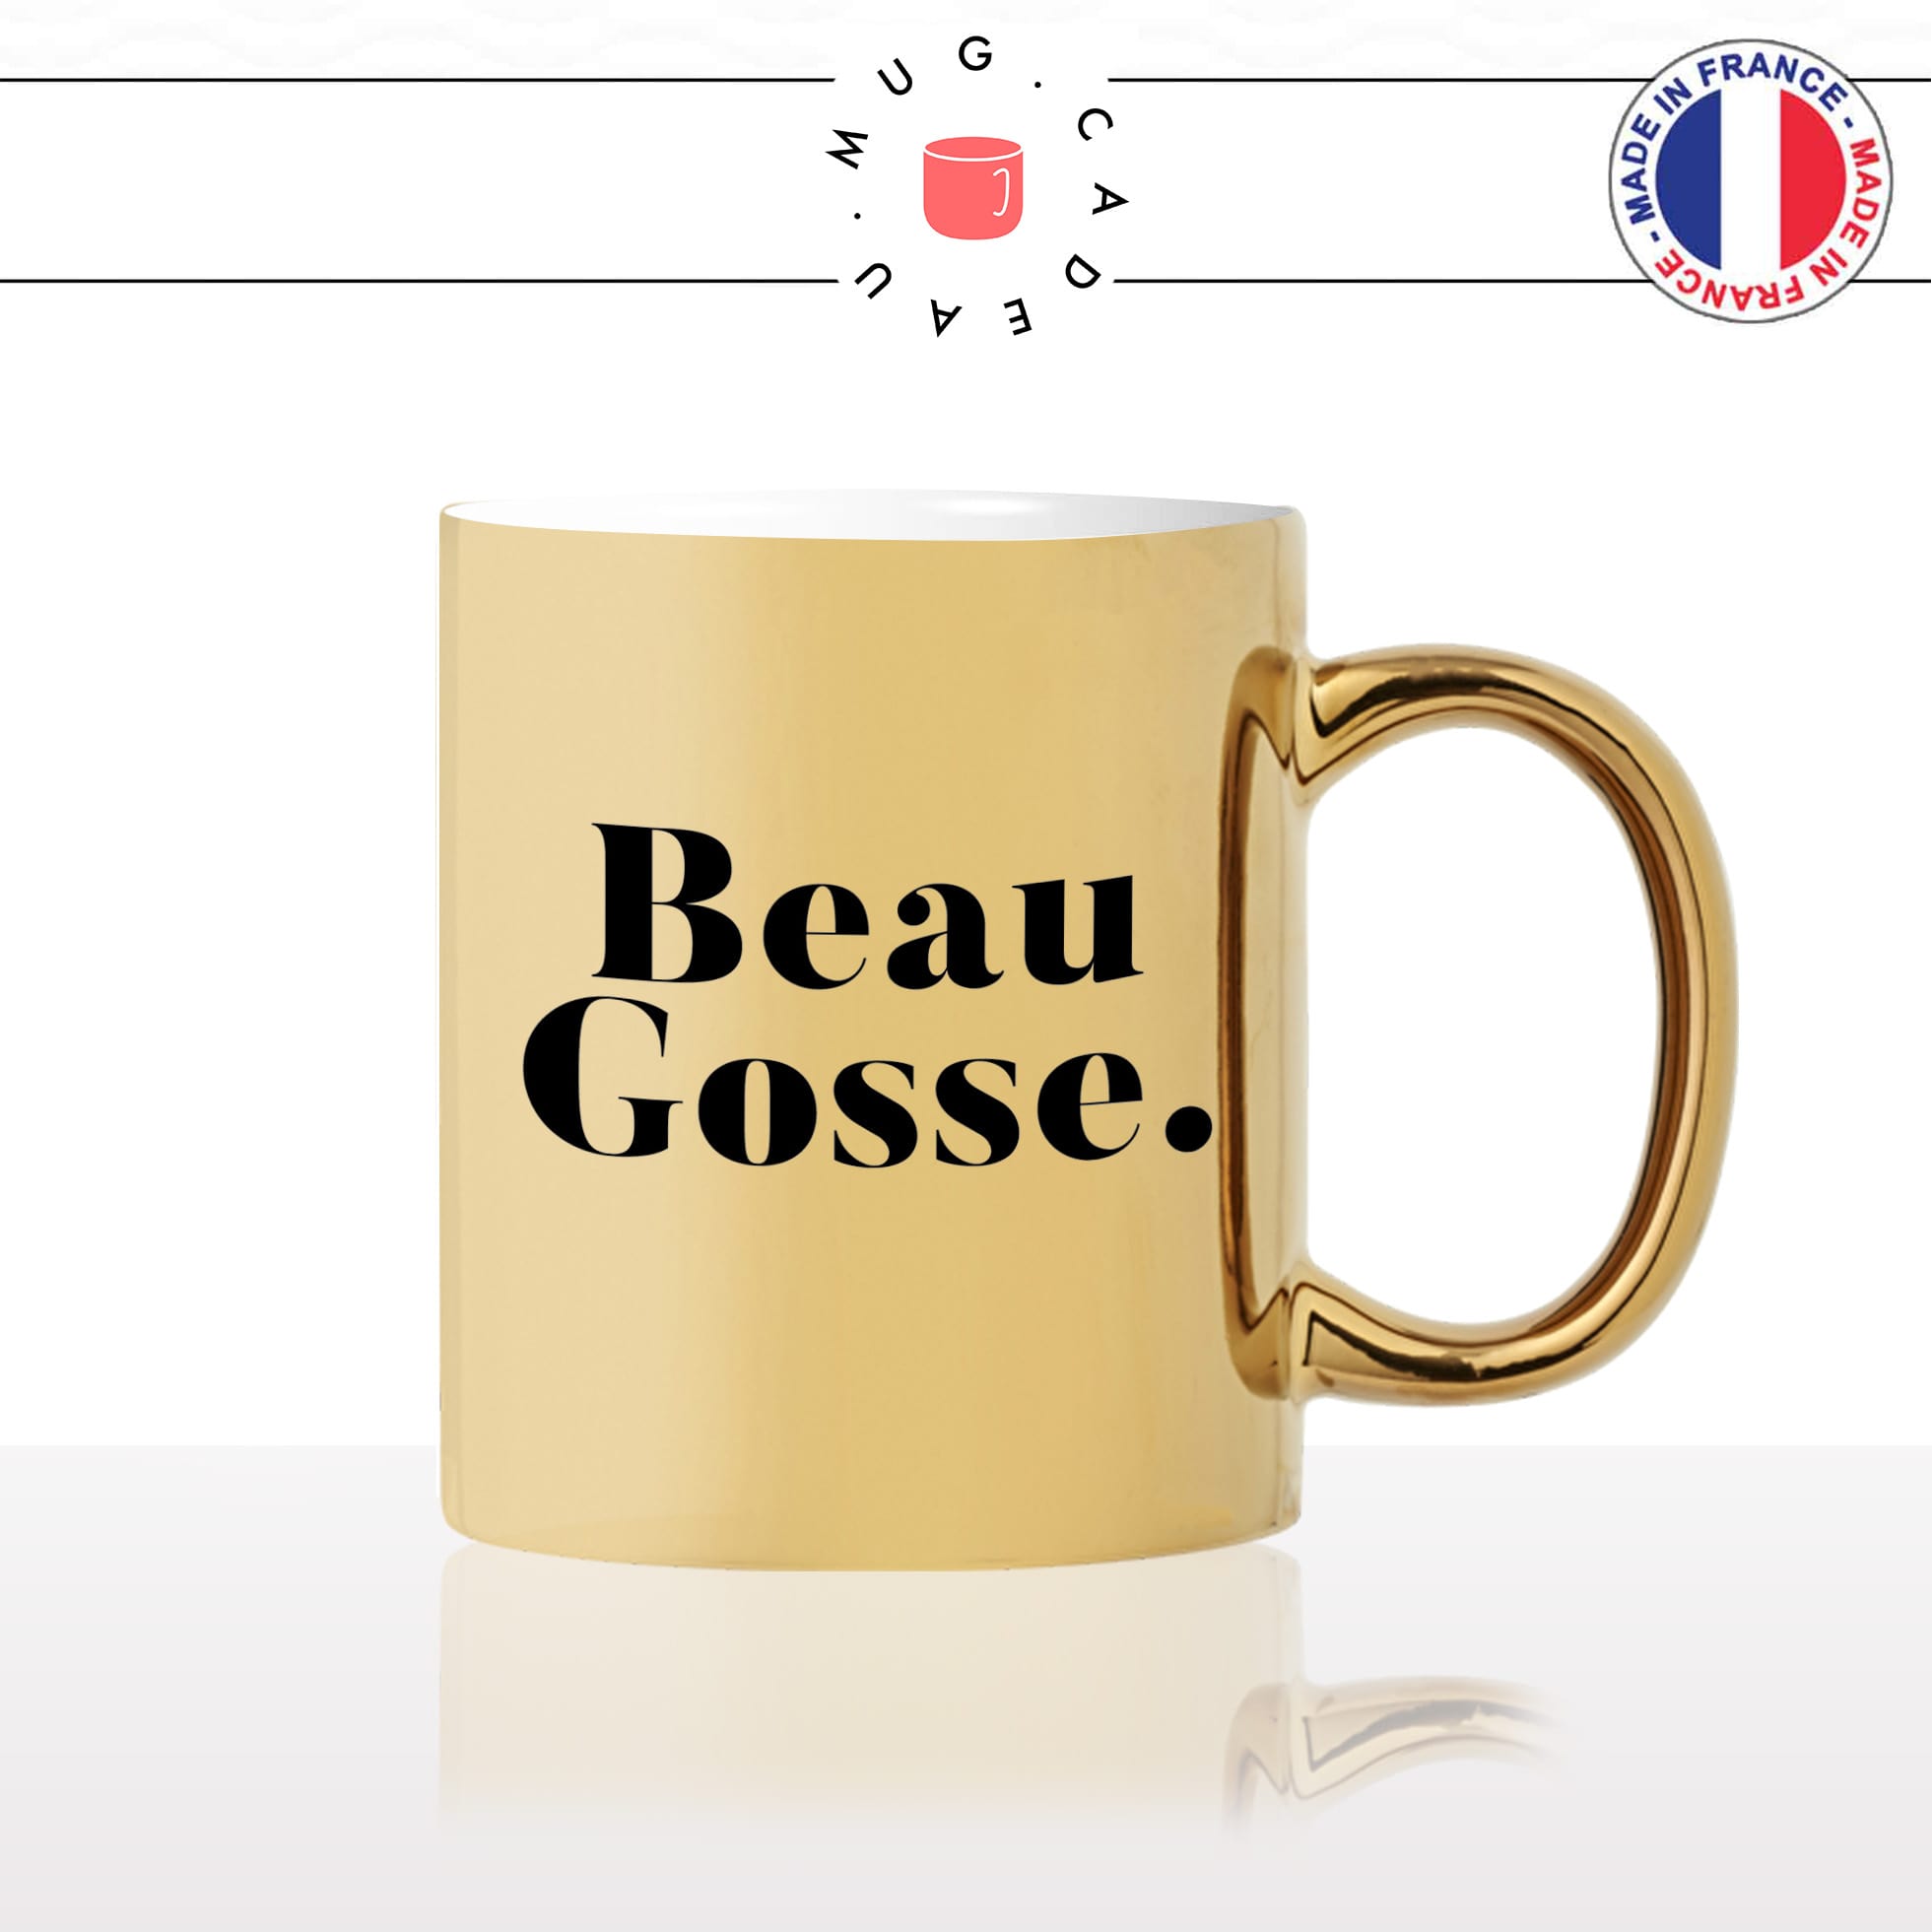 mug-tasse-or-doré-beau-gosse-homme-mec-couple-st-valentin-je-taime-amour-couple-café-thé-idée-cadeau-original-personnalisé2-min